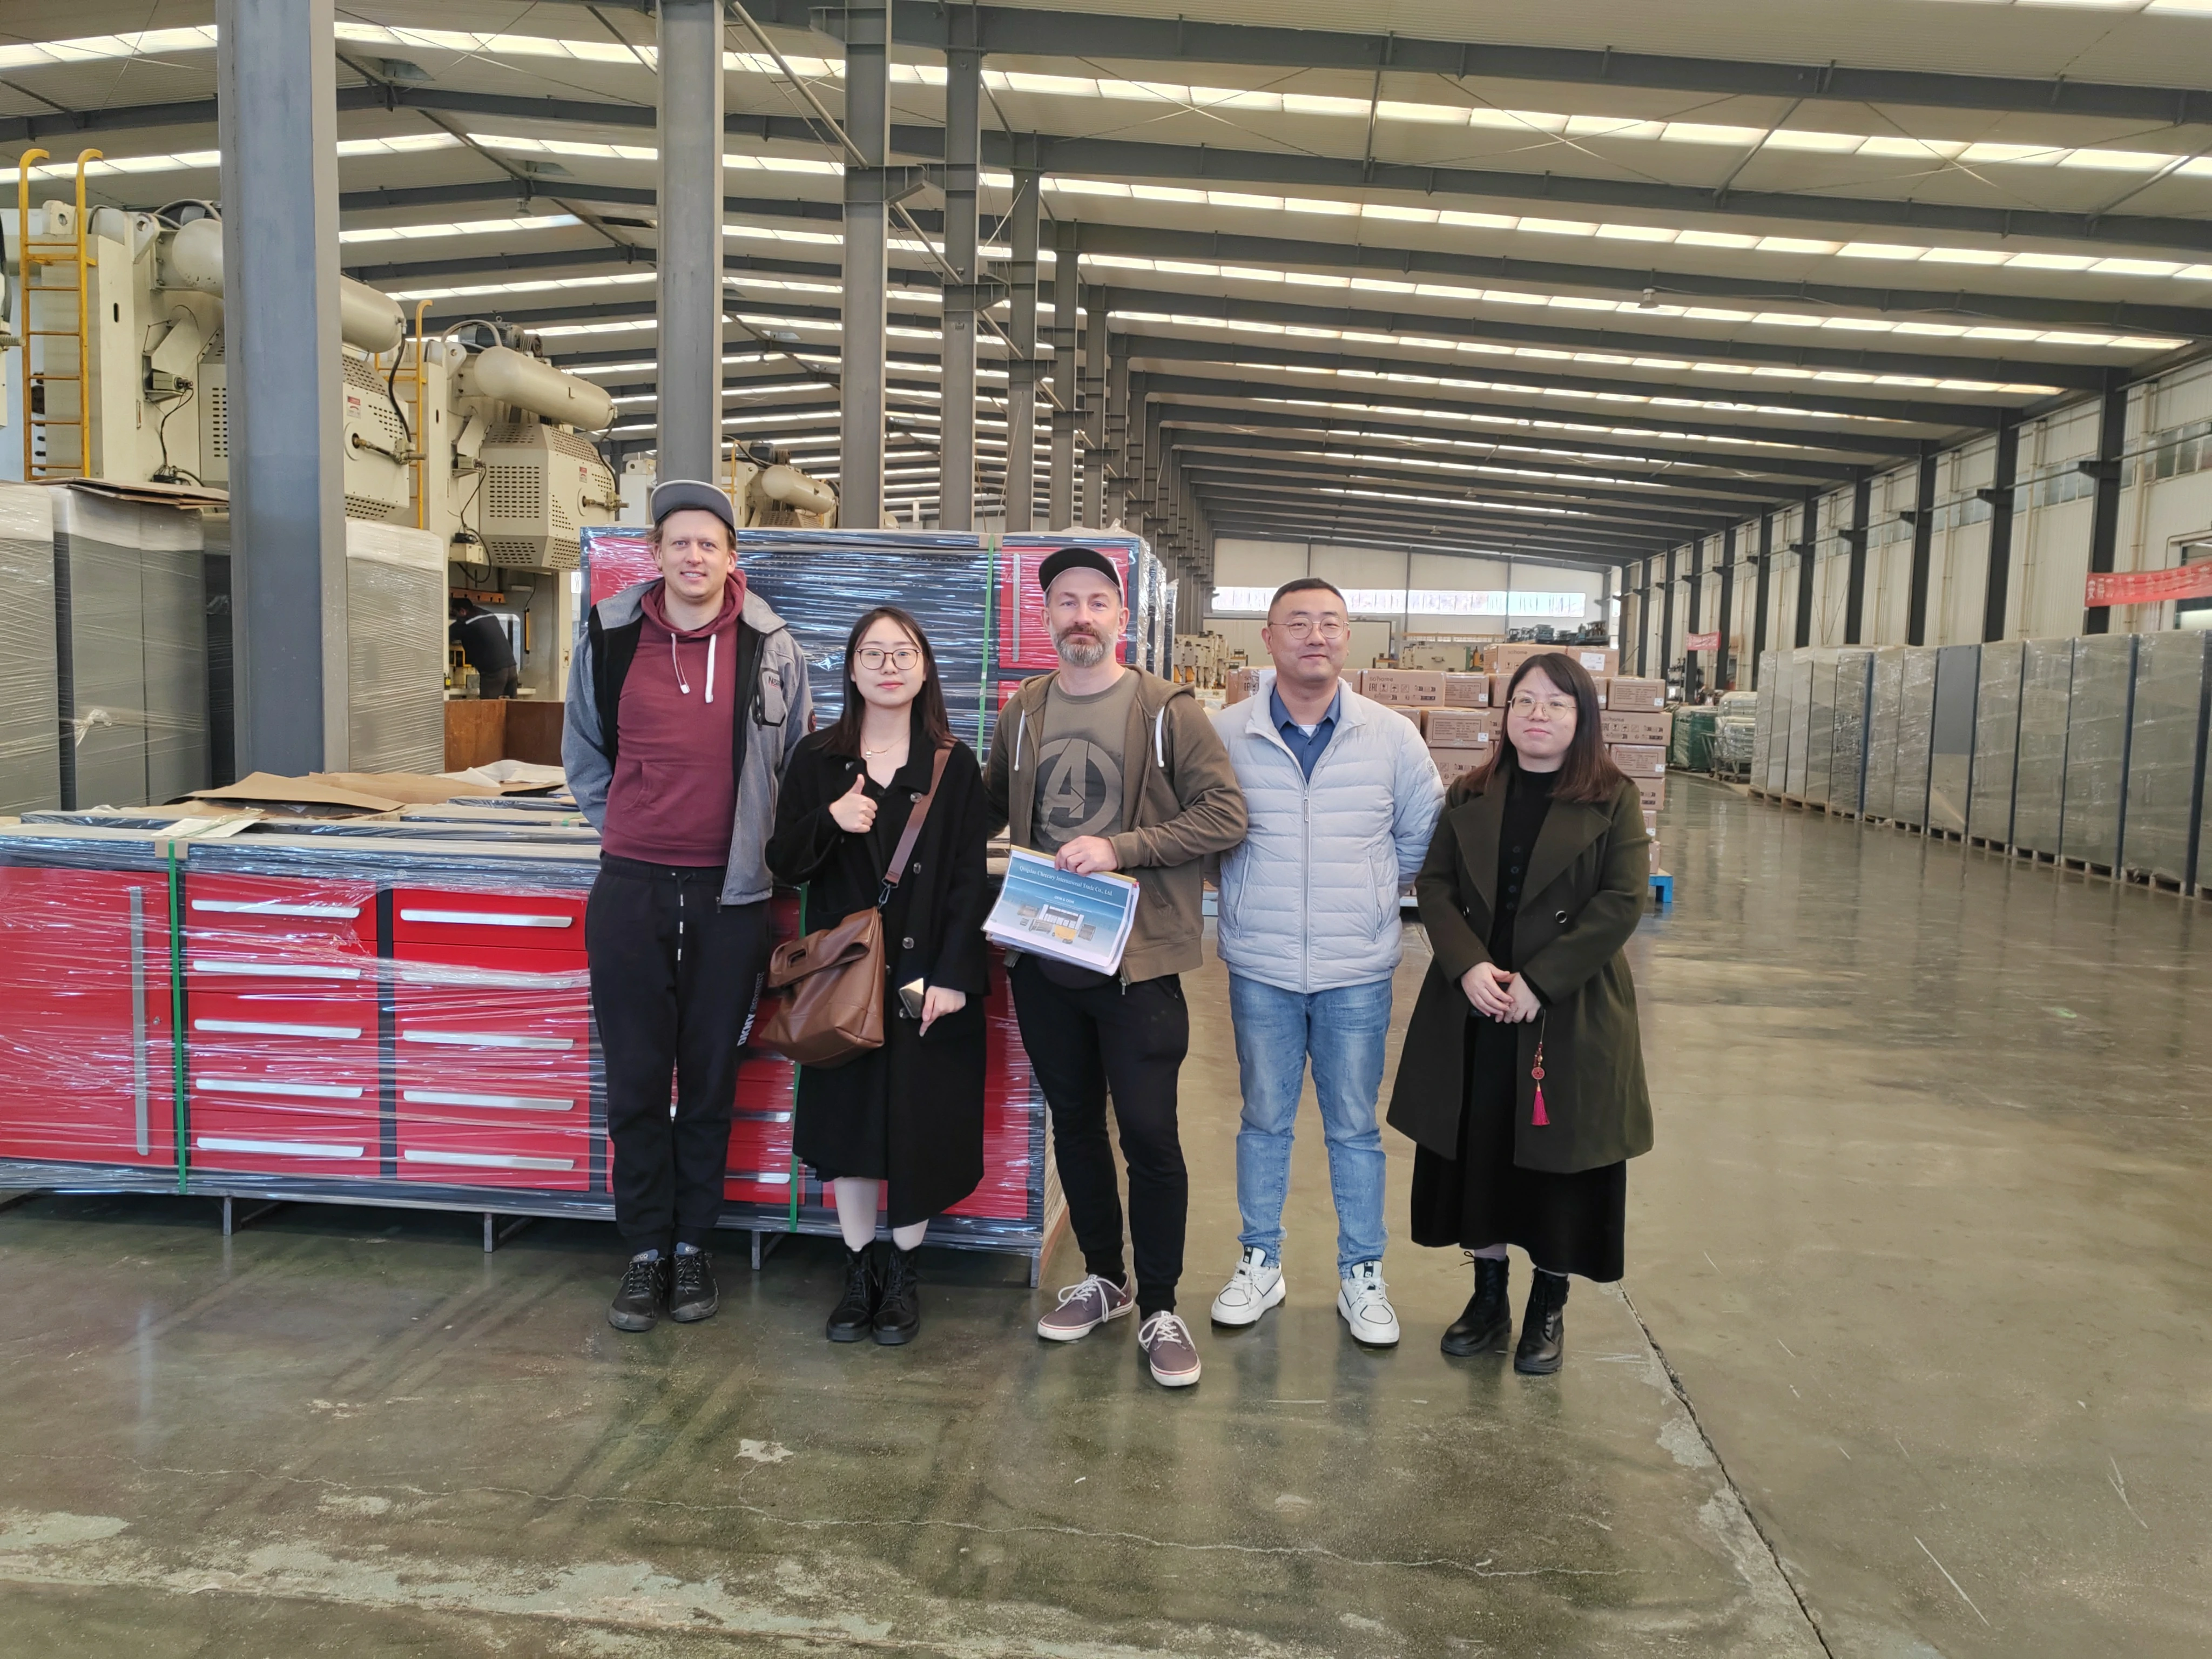 I clienti polacchi hanno visitato lo stabilimento CYJY e hanno apprezzato molto la qualità dell'armadio portautensili